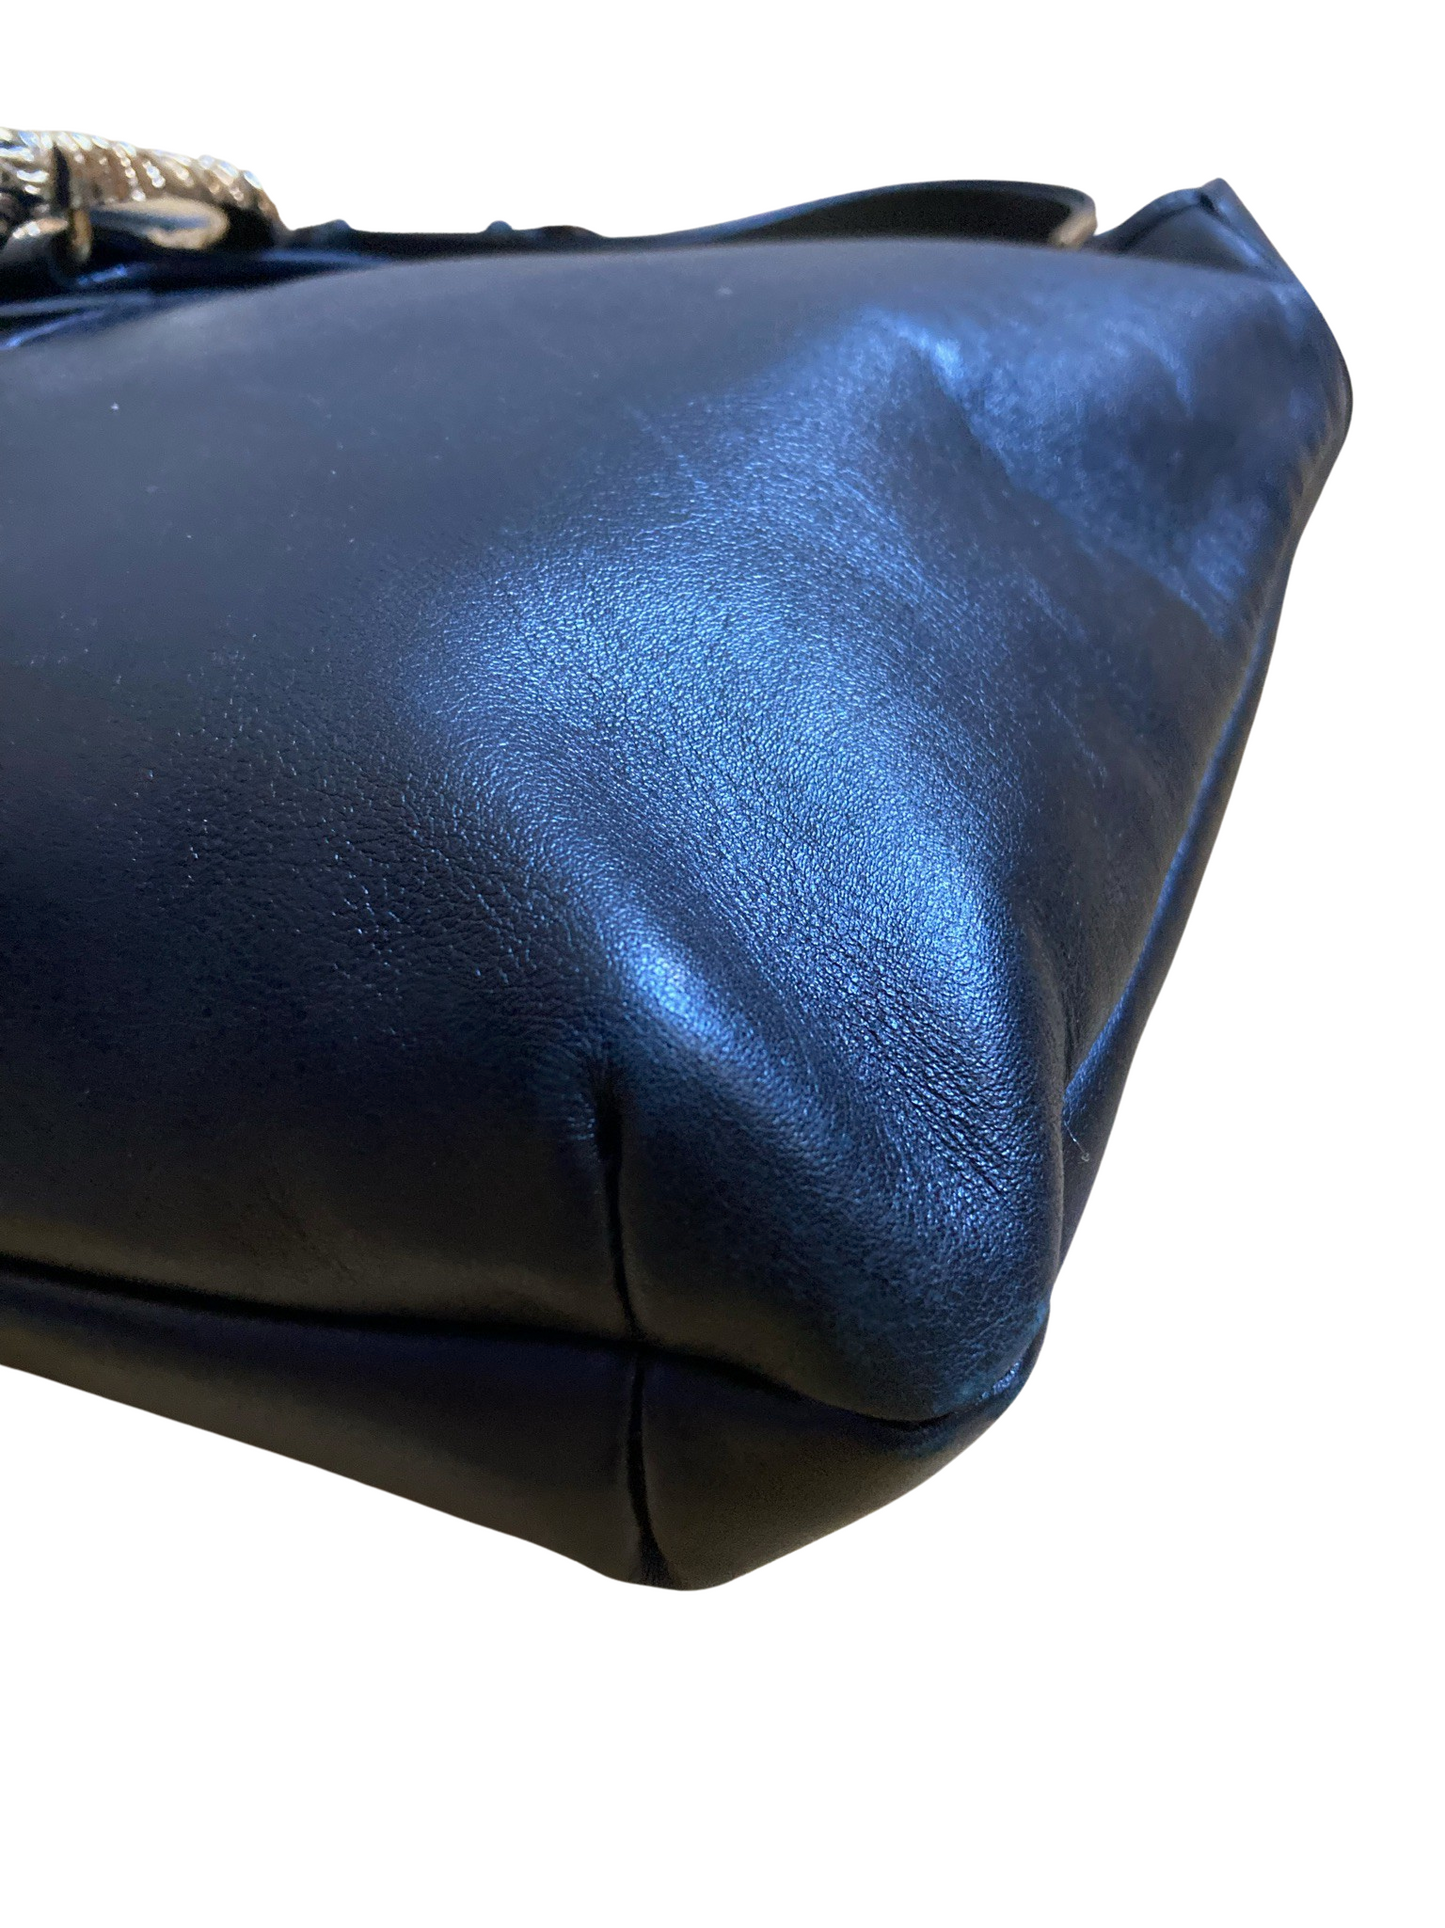 Gucci Dionysus Black Leather Shoulder Bag